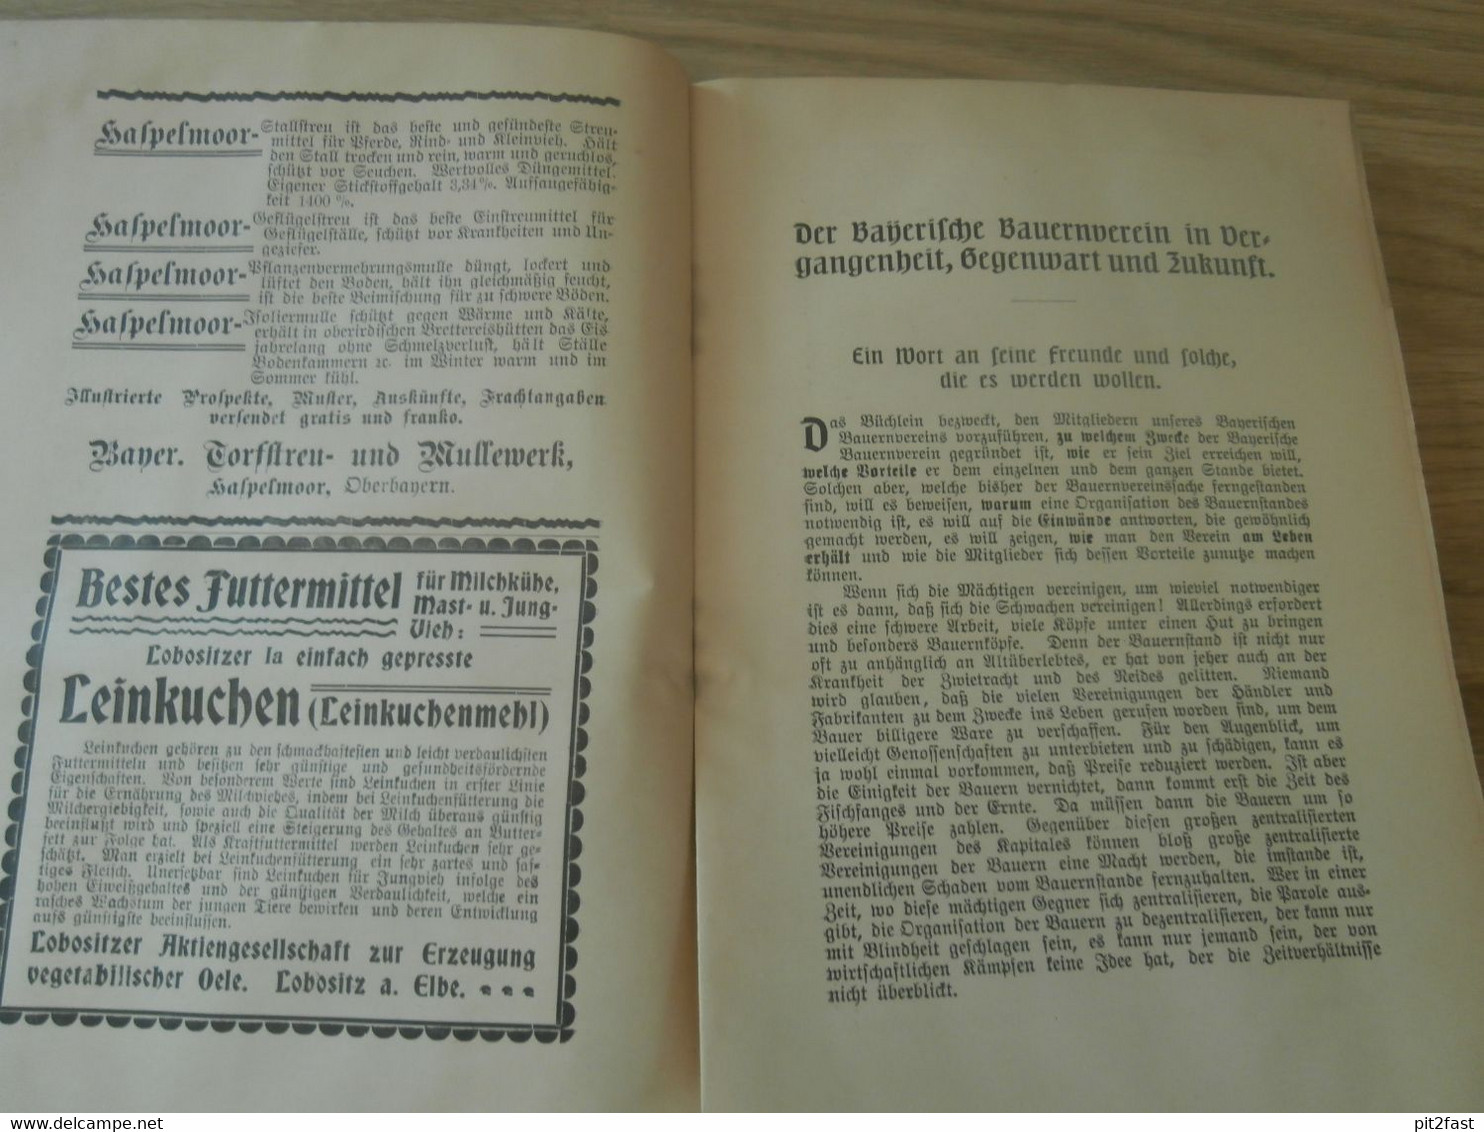 Der Bayerische Bauernverein In Vergangenheit, Gegenwart Und Zukunft , 1906 , Bayern , Bauern , Landwirtschaft , Ansbach - Rare